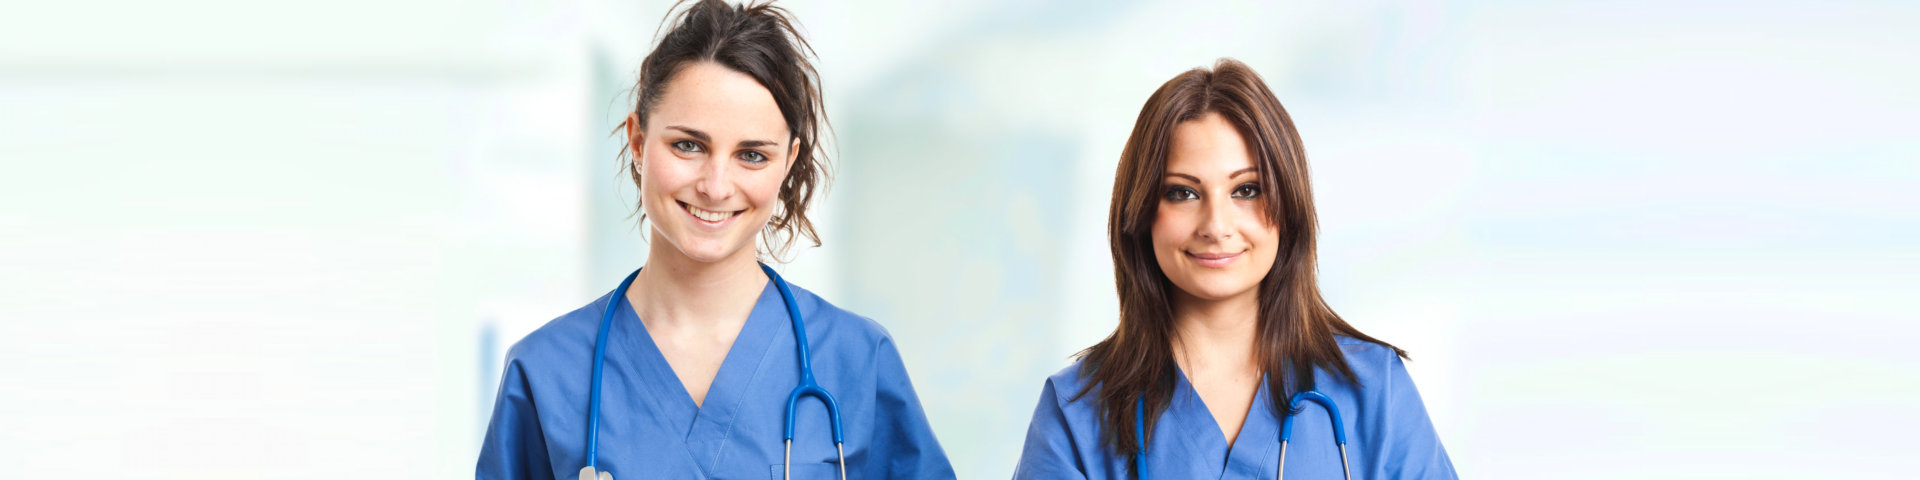 Two nurses smiling